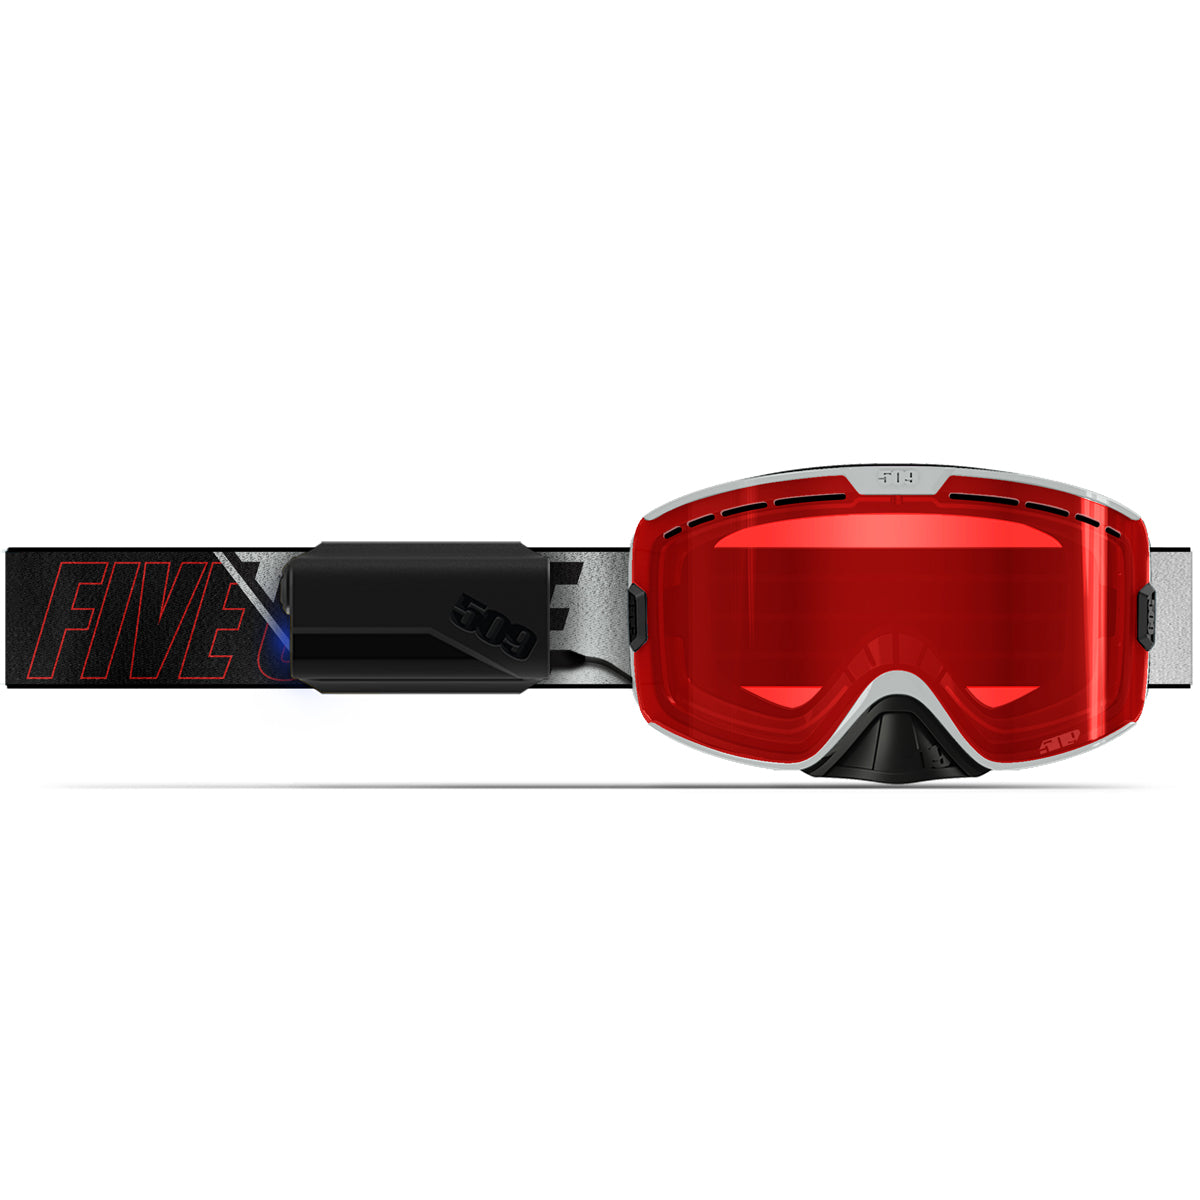 Kingpin Ignite Heated Goggle - Racing Red